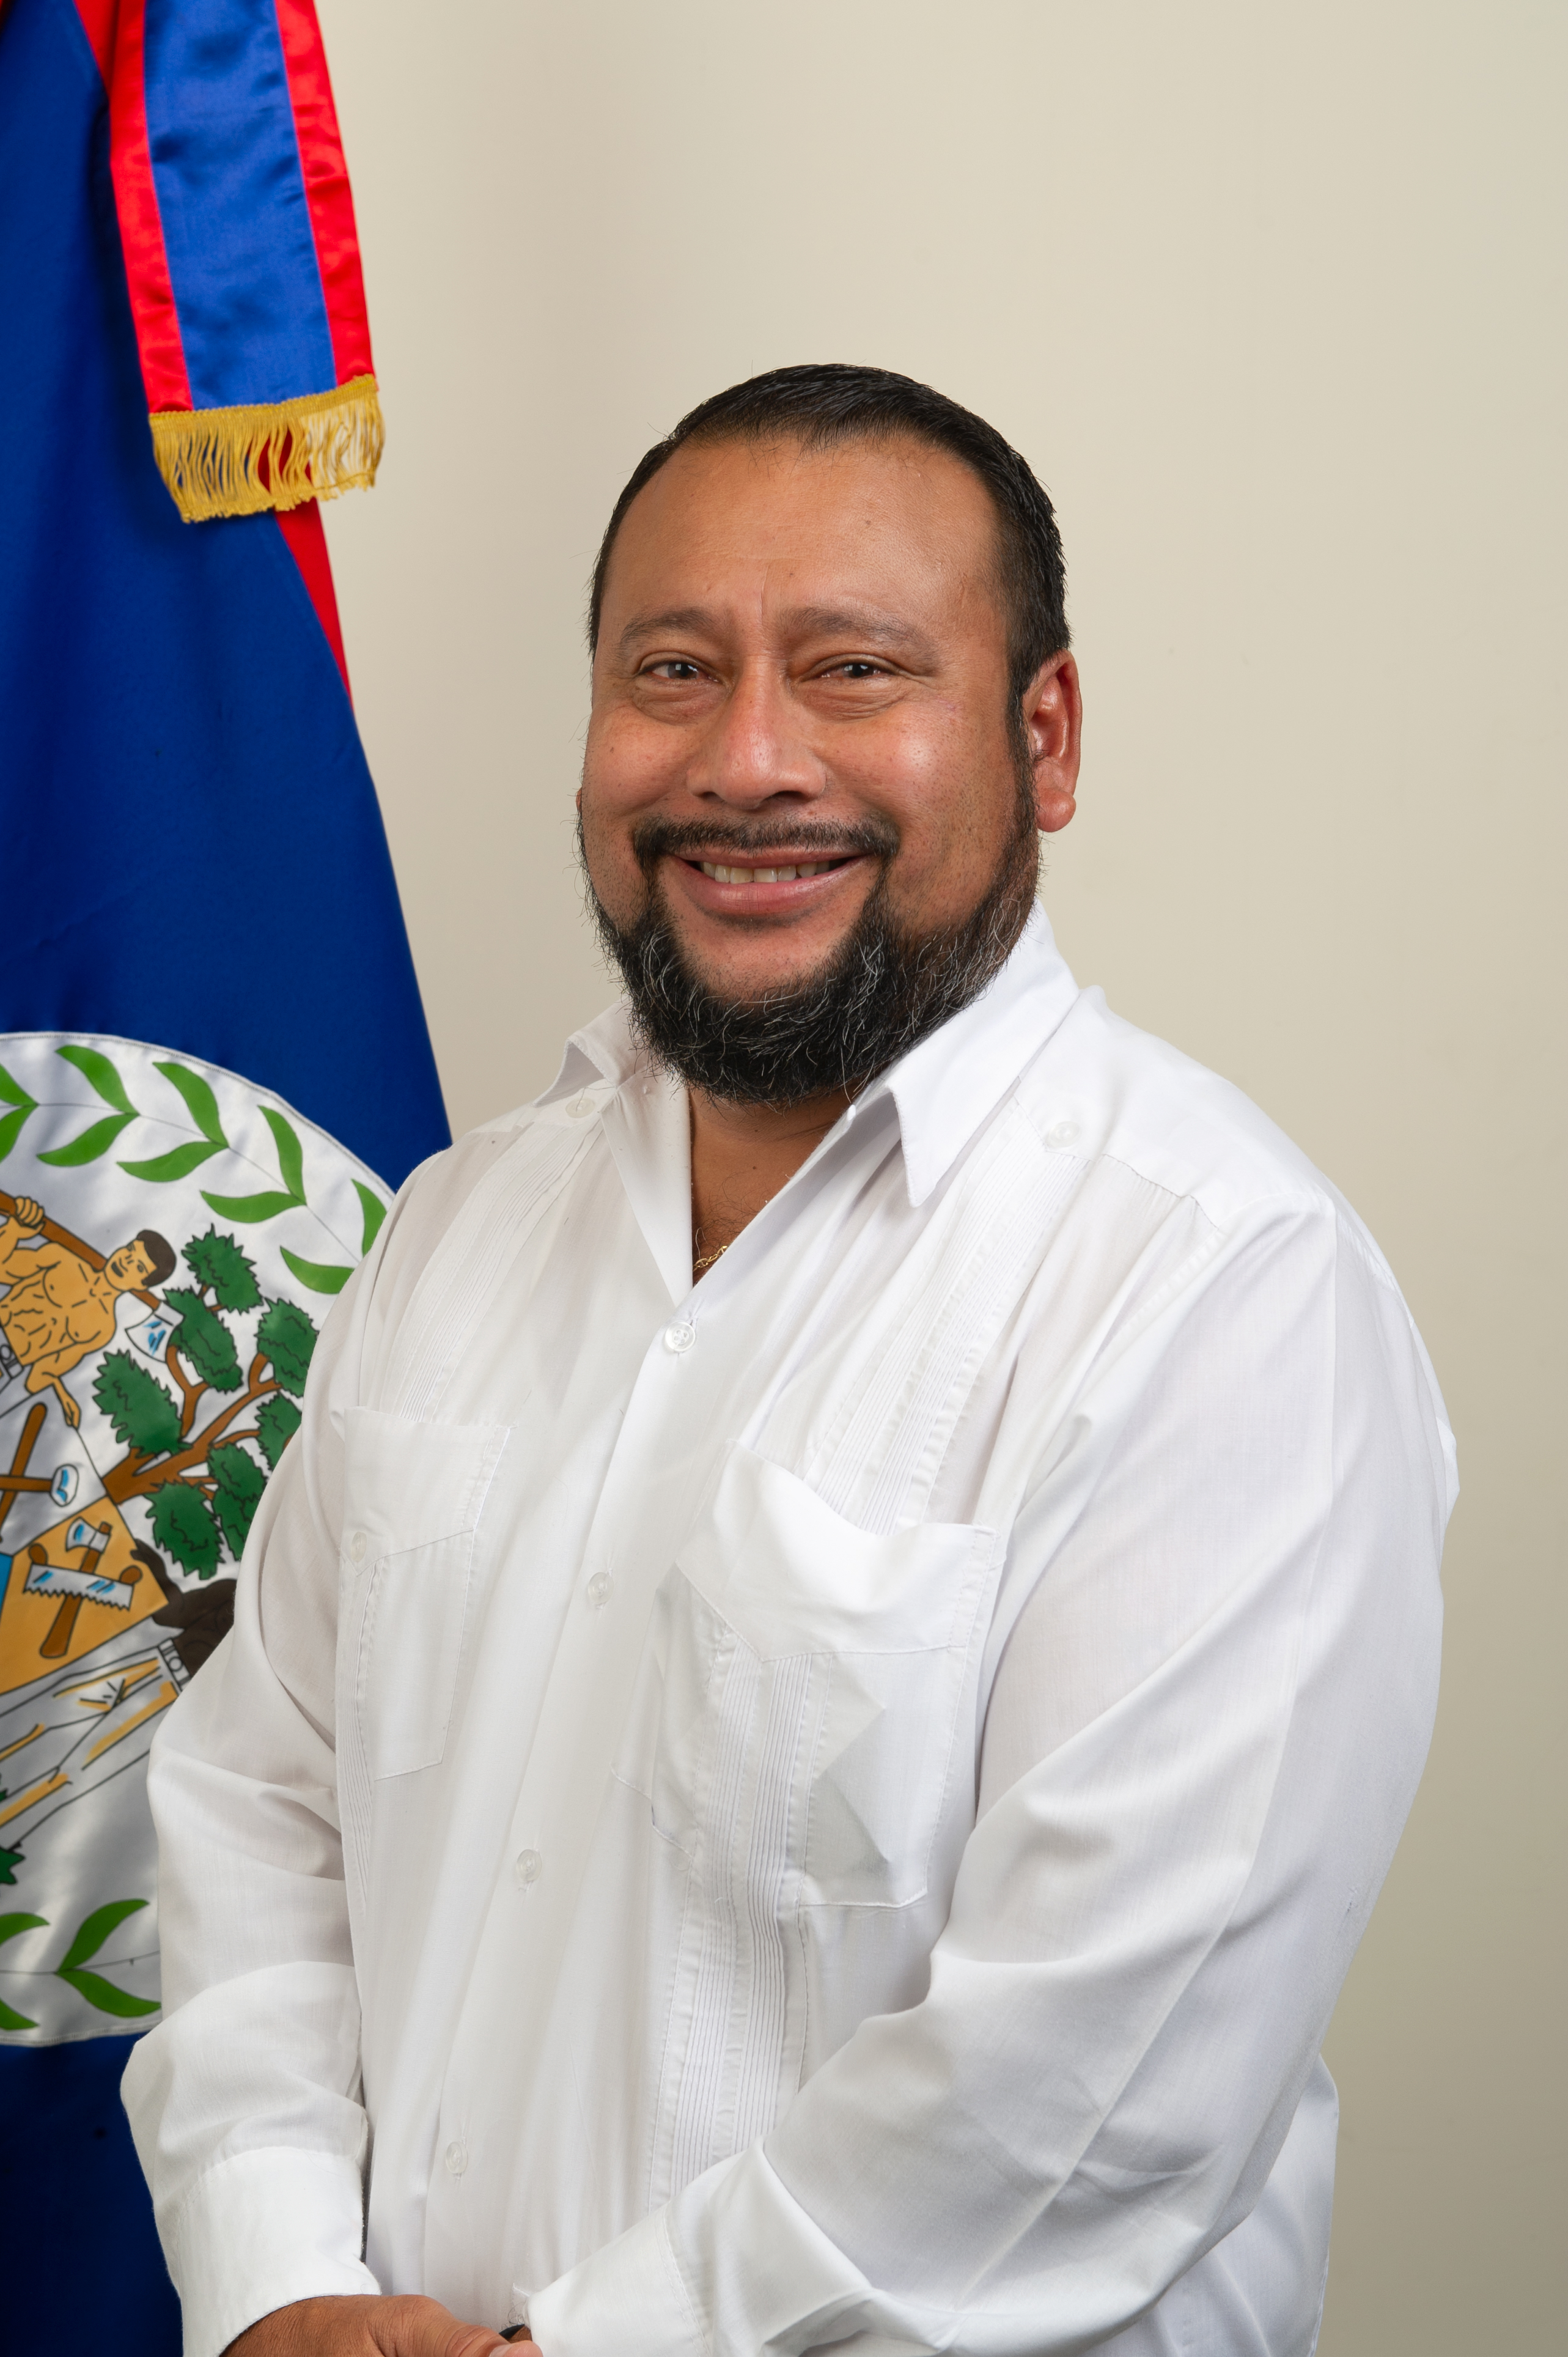 Hon. Jose Abelardo Mai